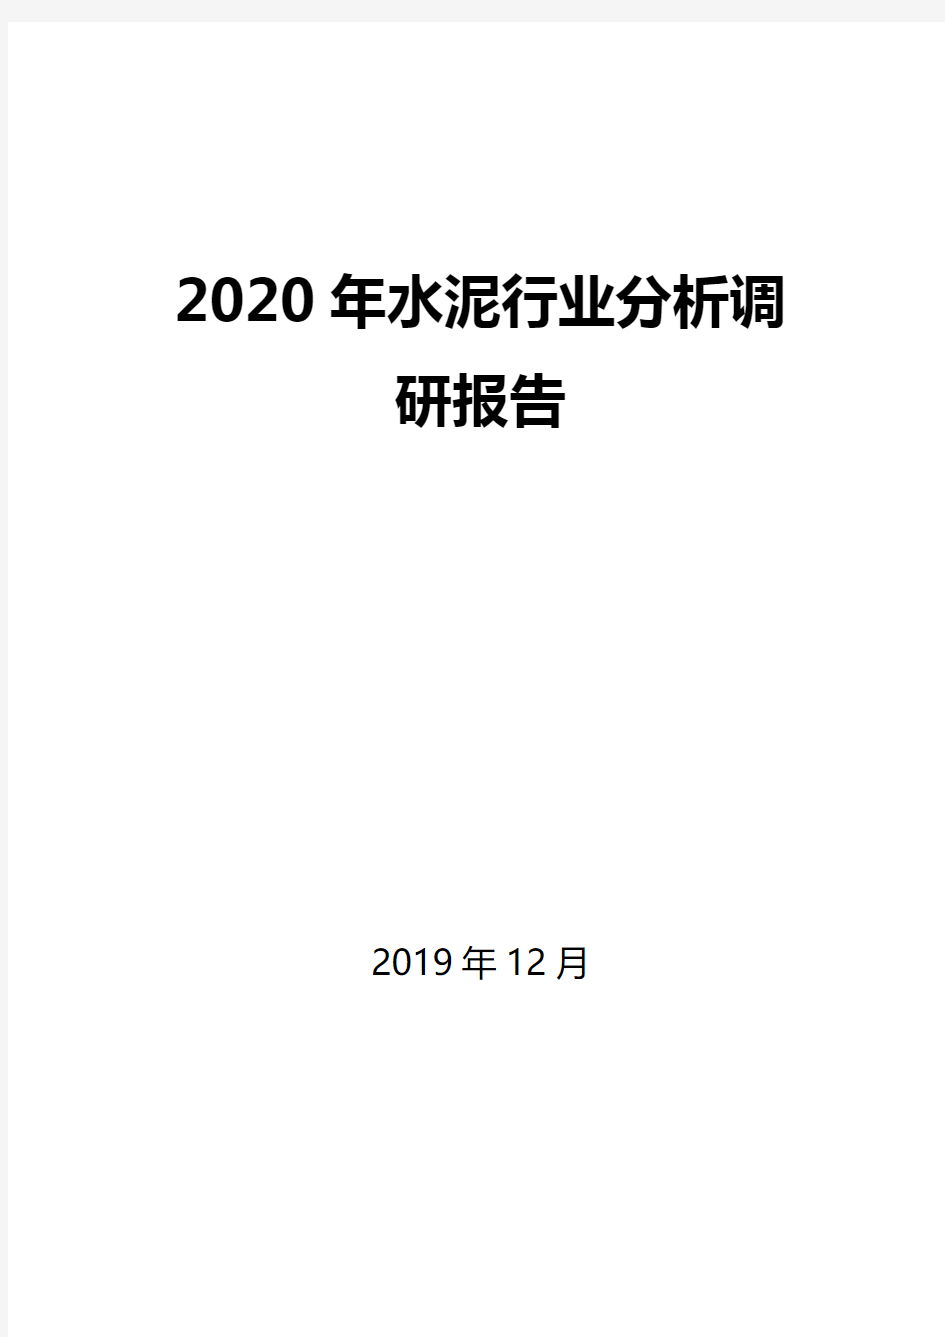 2020年水泥行业分析调研报告